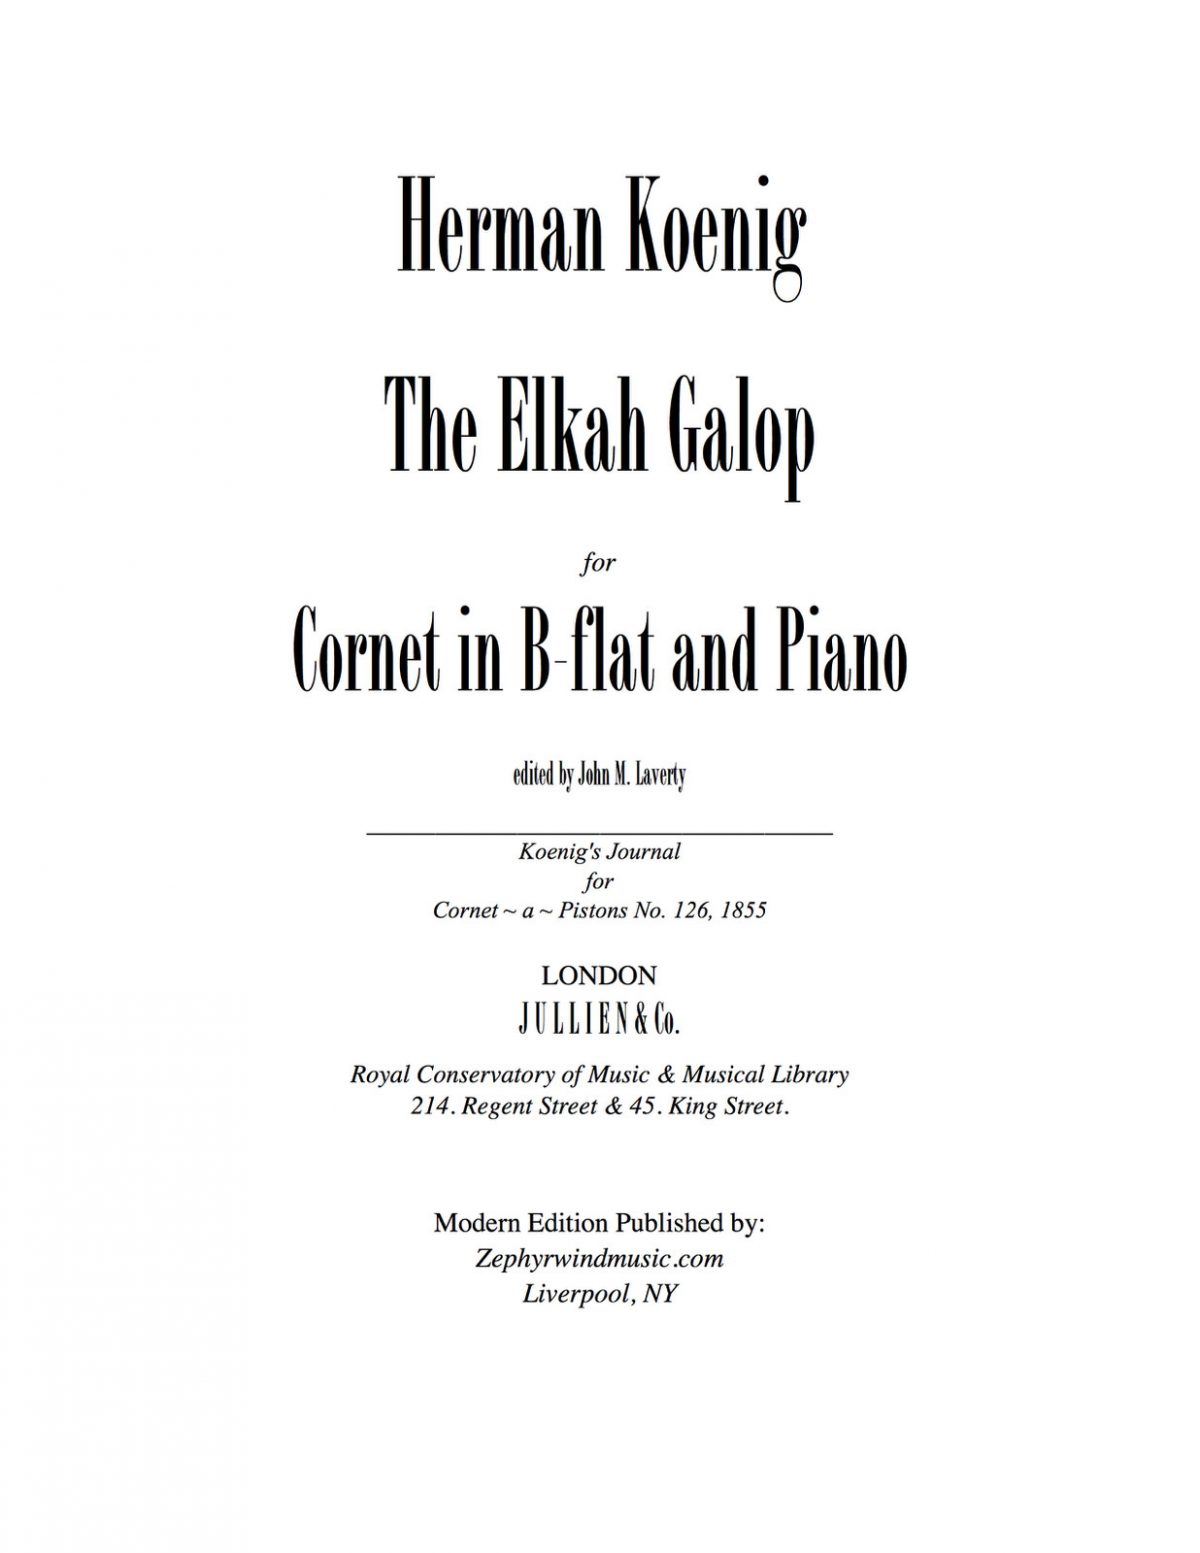 The Elkah Galop